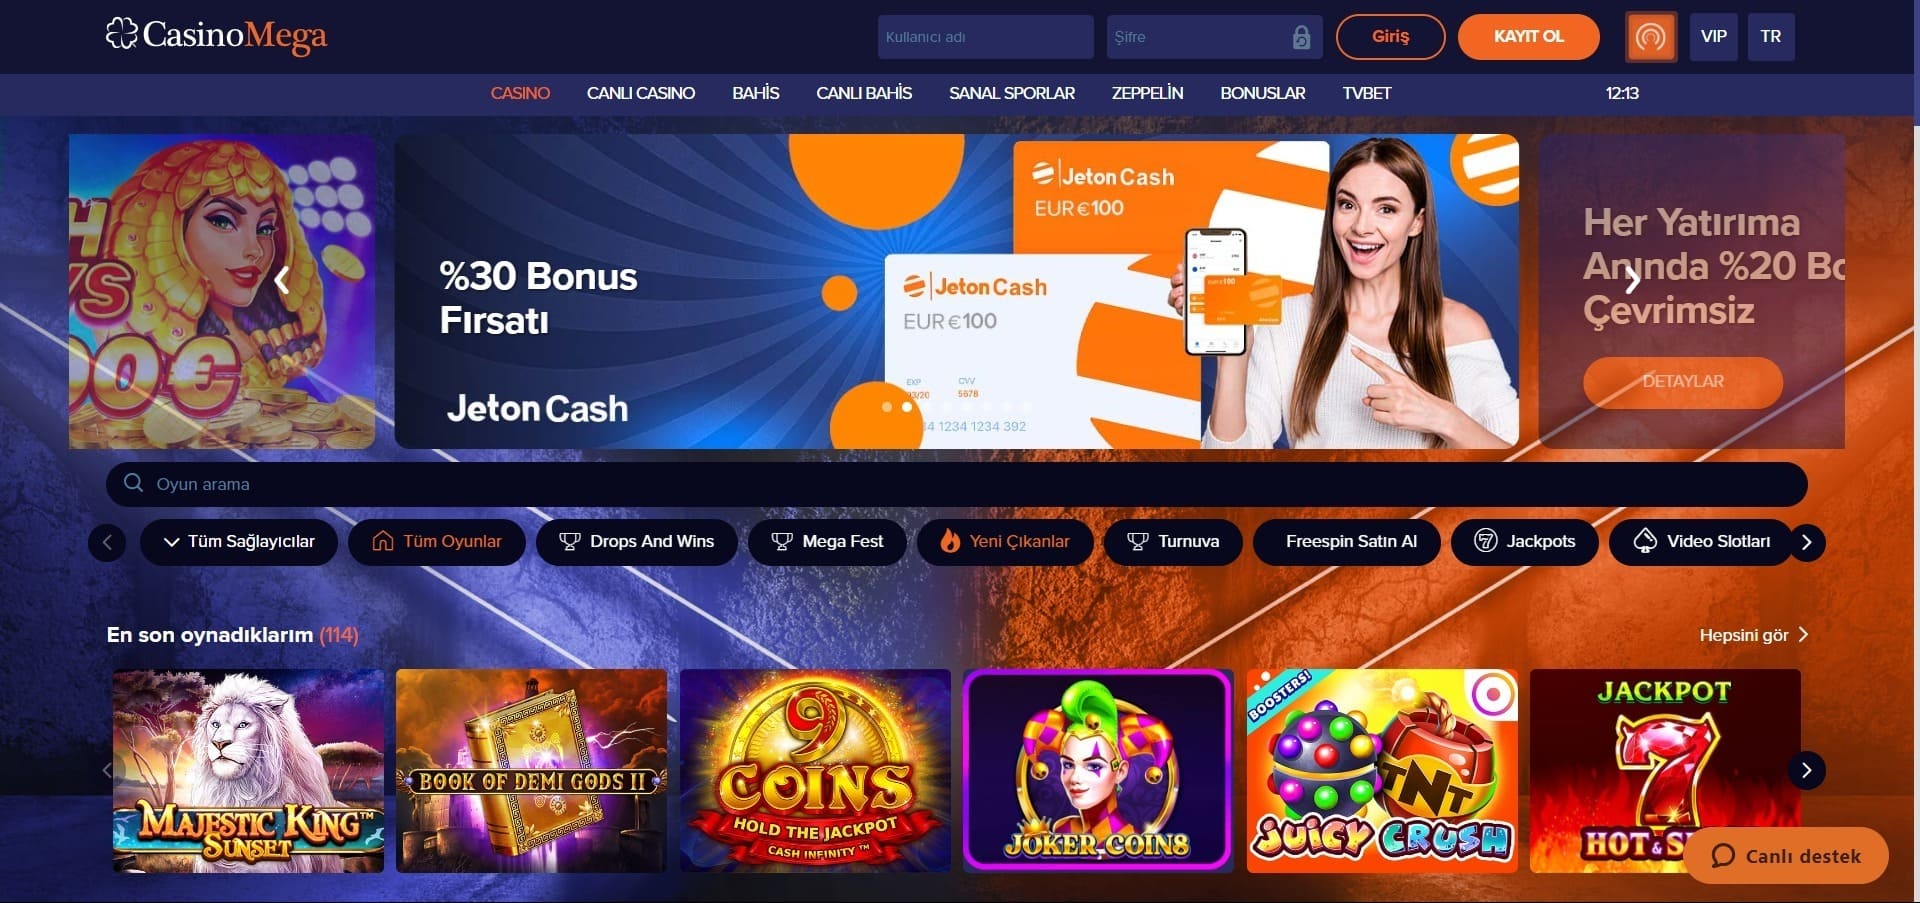 Casino Mega'nun resmi web sitesi